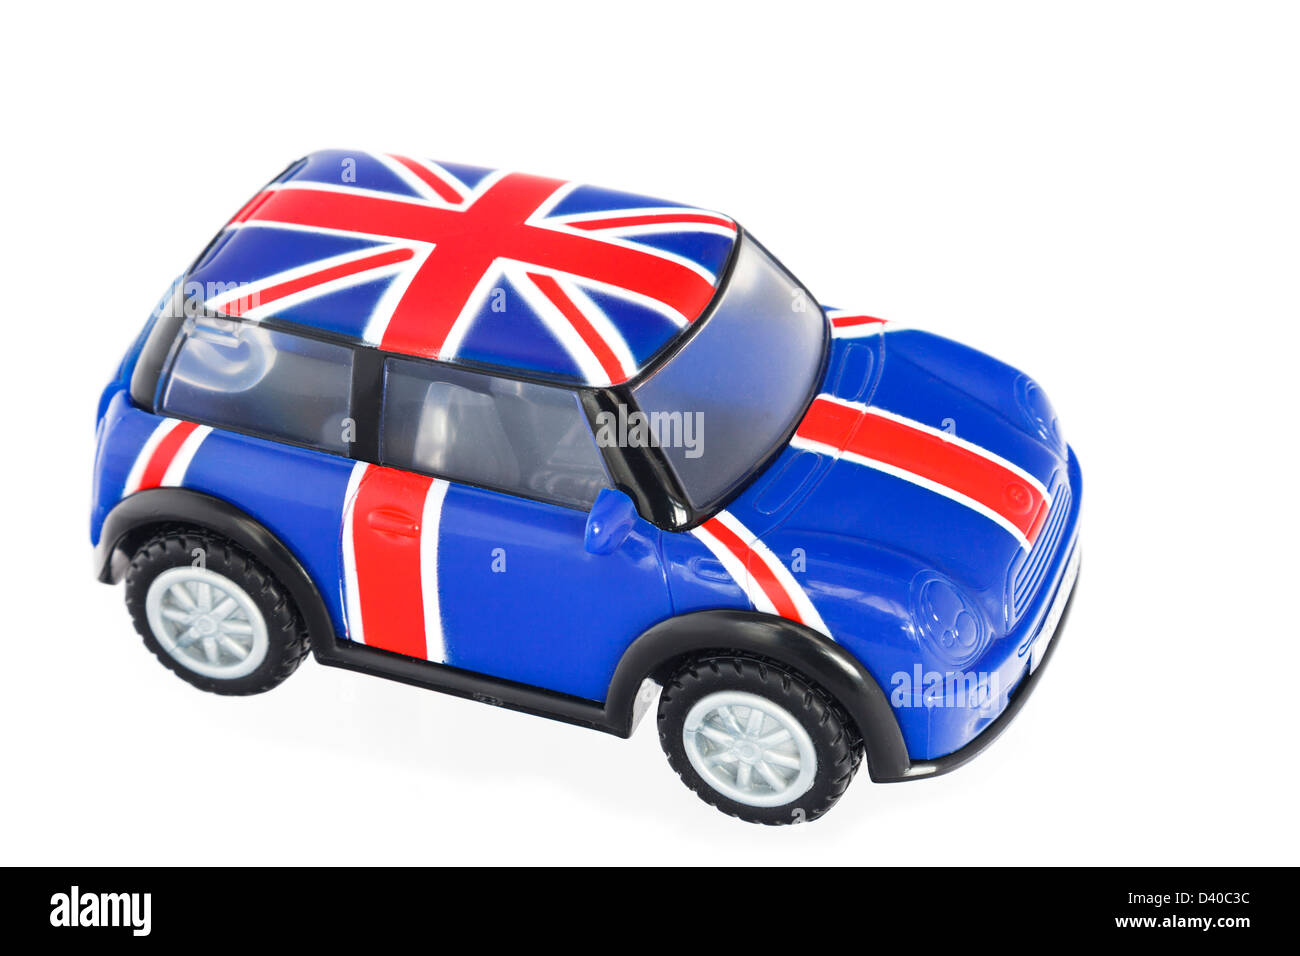 Rouge Blanc et bleu Union Jack peint sur le toit d'un modèle de voiture Mini jouet en plastique isolé sur un fond uni Banque D'Images